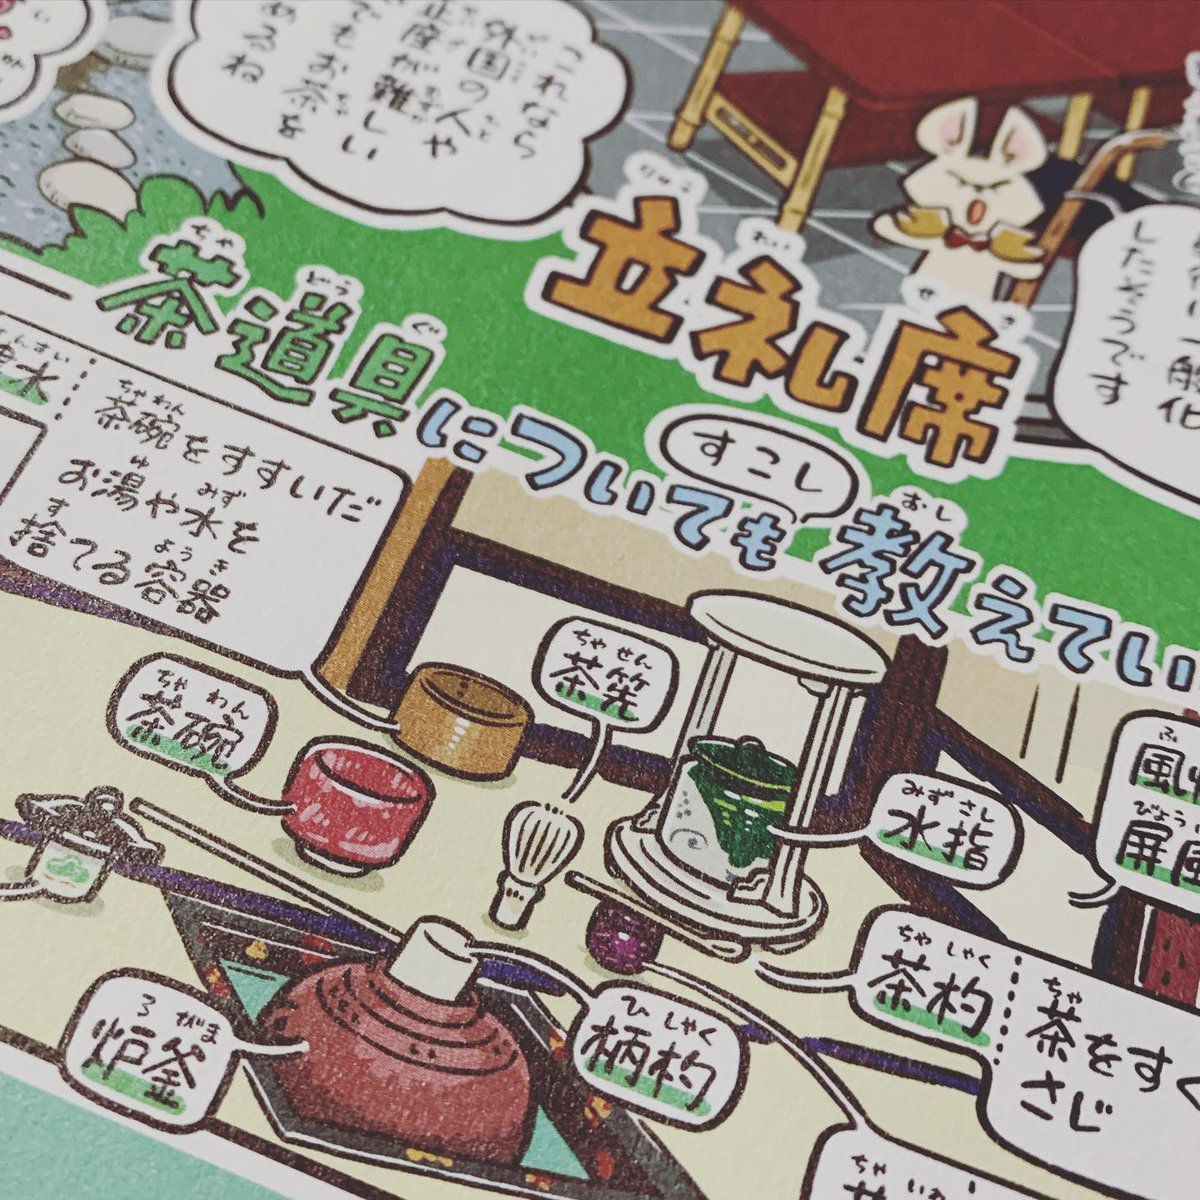 月刊ジュアエラにて連載中「のぞき見探偵が行く‼︎」。6月号のReport.58は「茶室」をのぞき見。
東京都庭園美術館の庭園内にある茶室「光華(重要文化財)」を、学芸員の方に解説していただきながら取材。有り難かったです。
書店のほか、一部のwebの読み放題サービスなどでもご覧いただけます。 